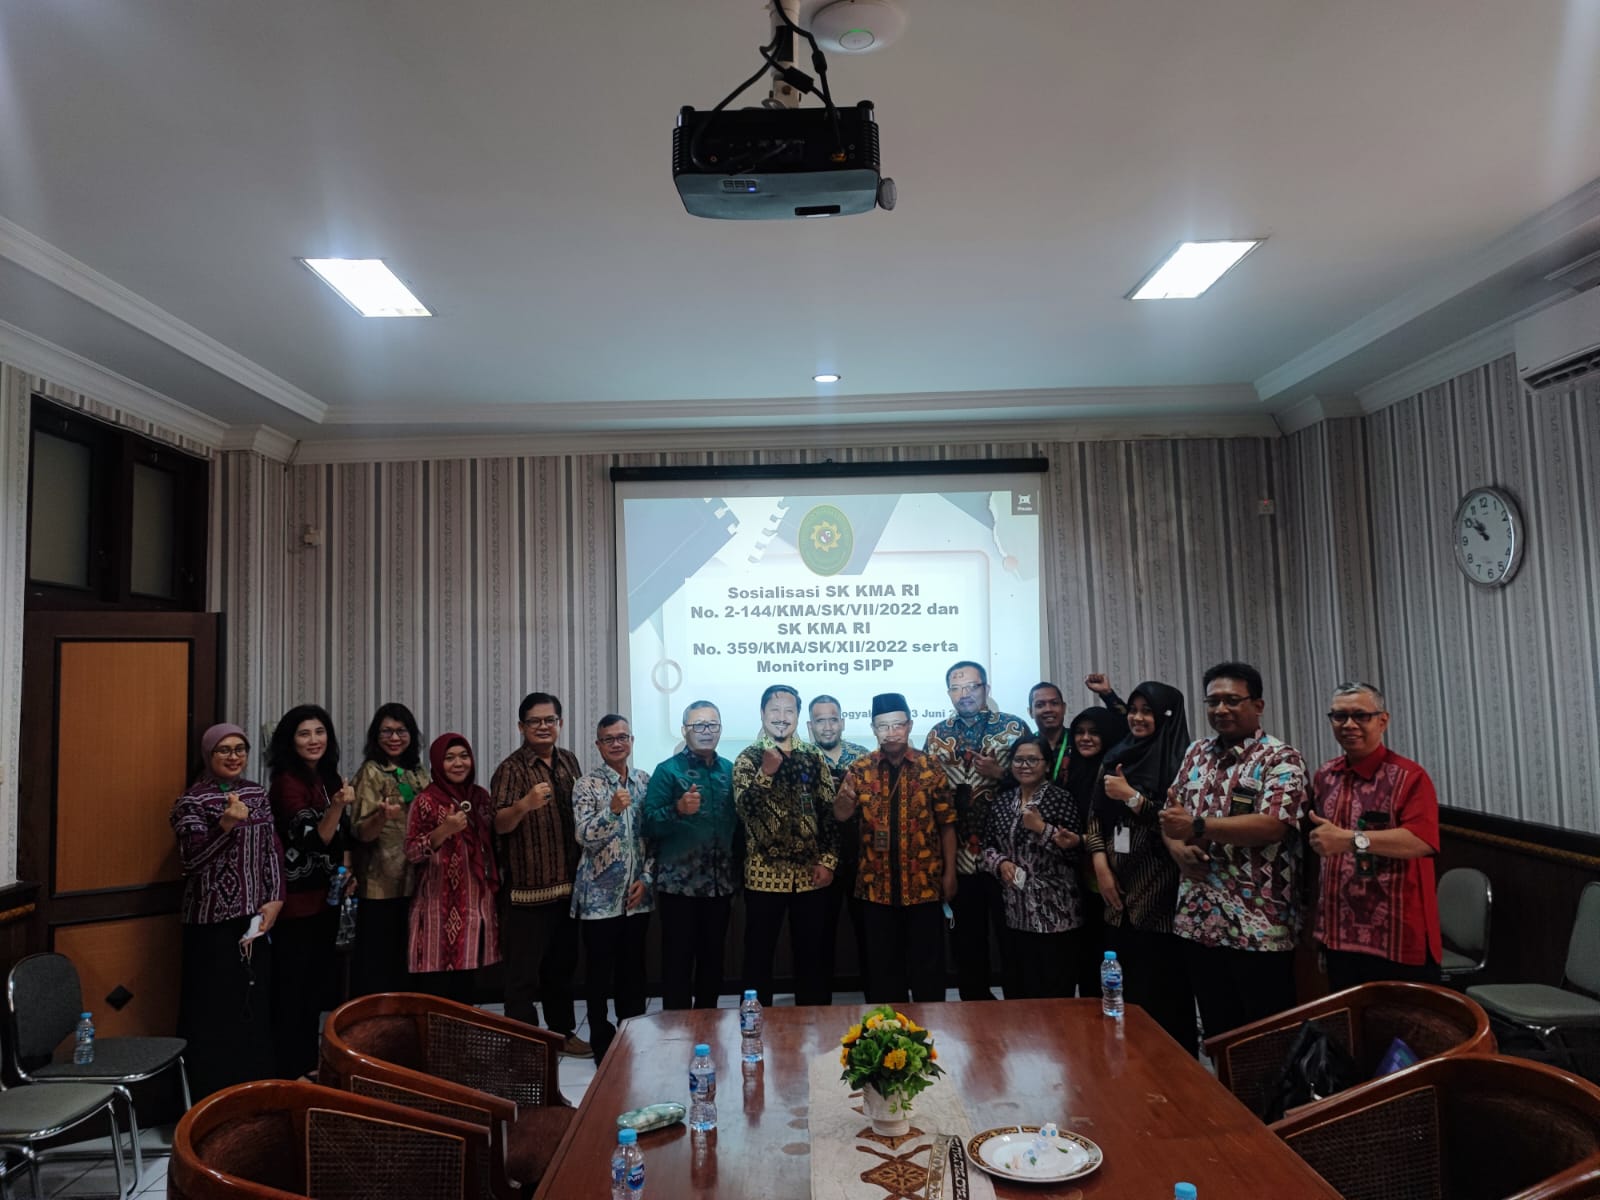 Pengadilan Negeri Yogyakarta Mengikuti Sosialisasi SK KMA RI No. 2-114 Tahun 2022 dan SK KMA RI No. 359 Tahun 2022